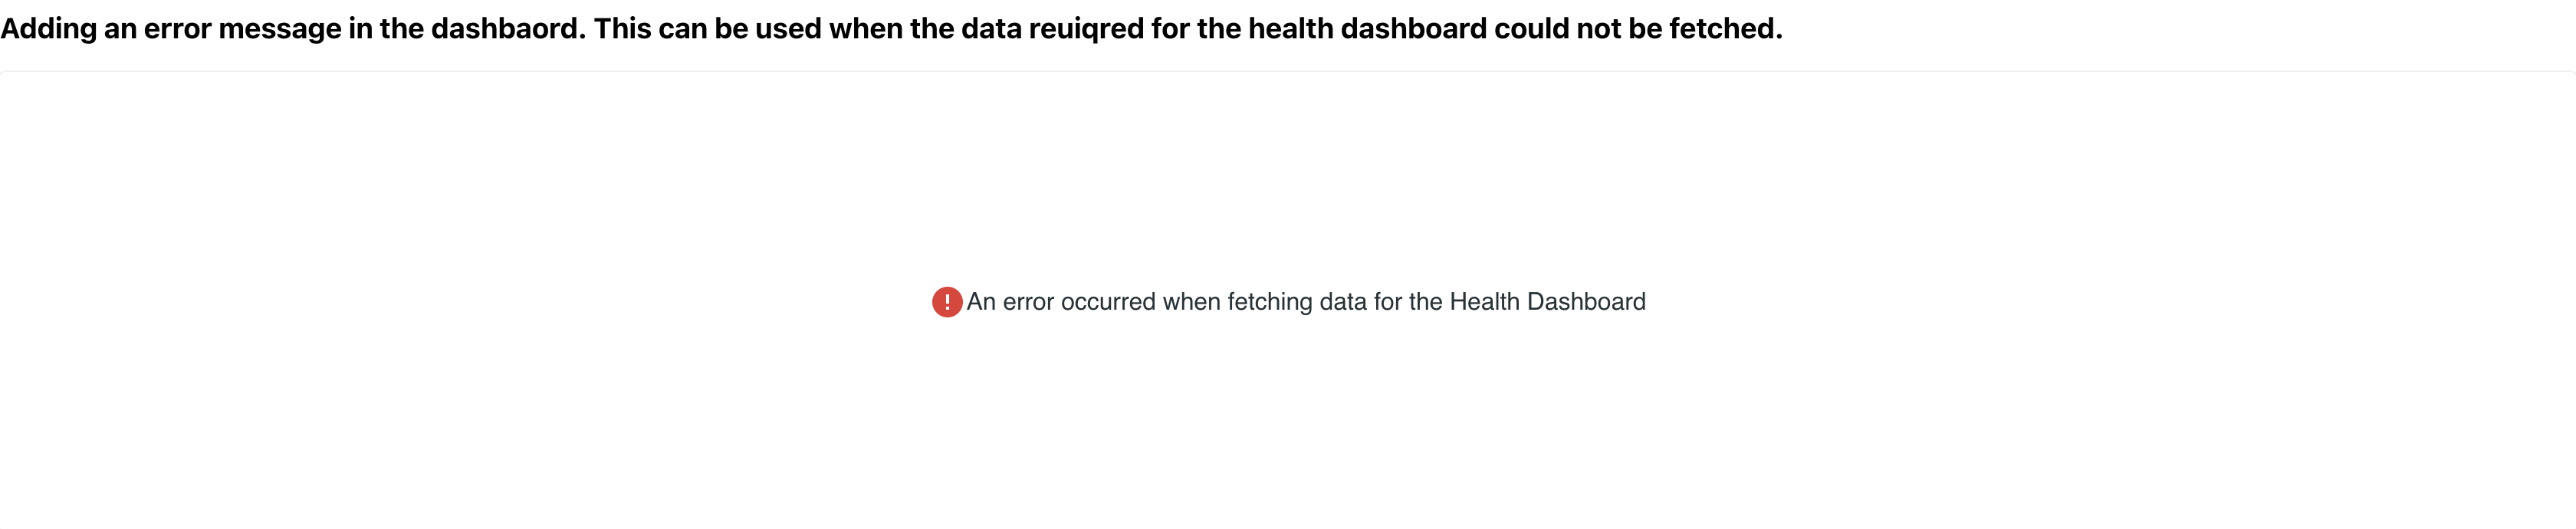 React Health Dashboard error view